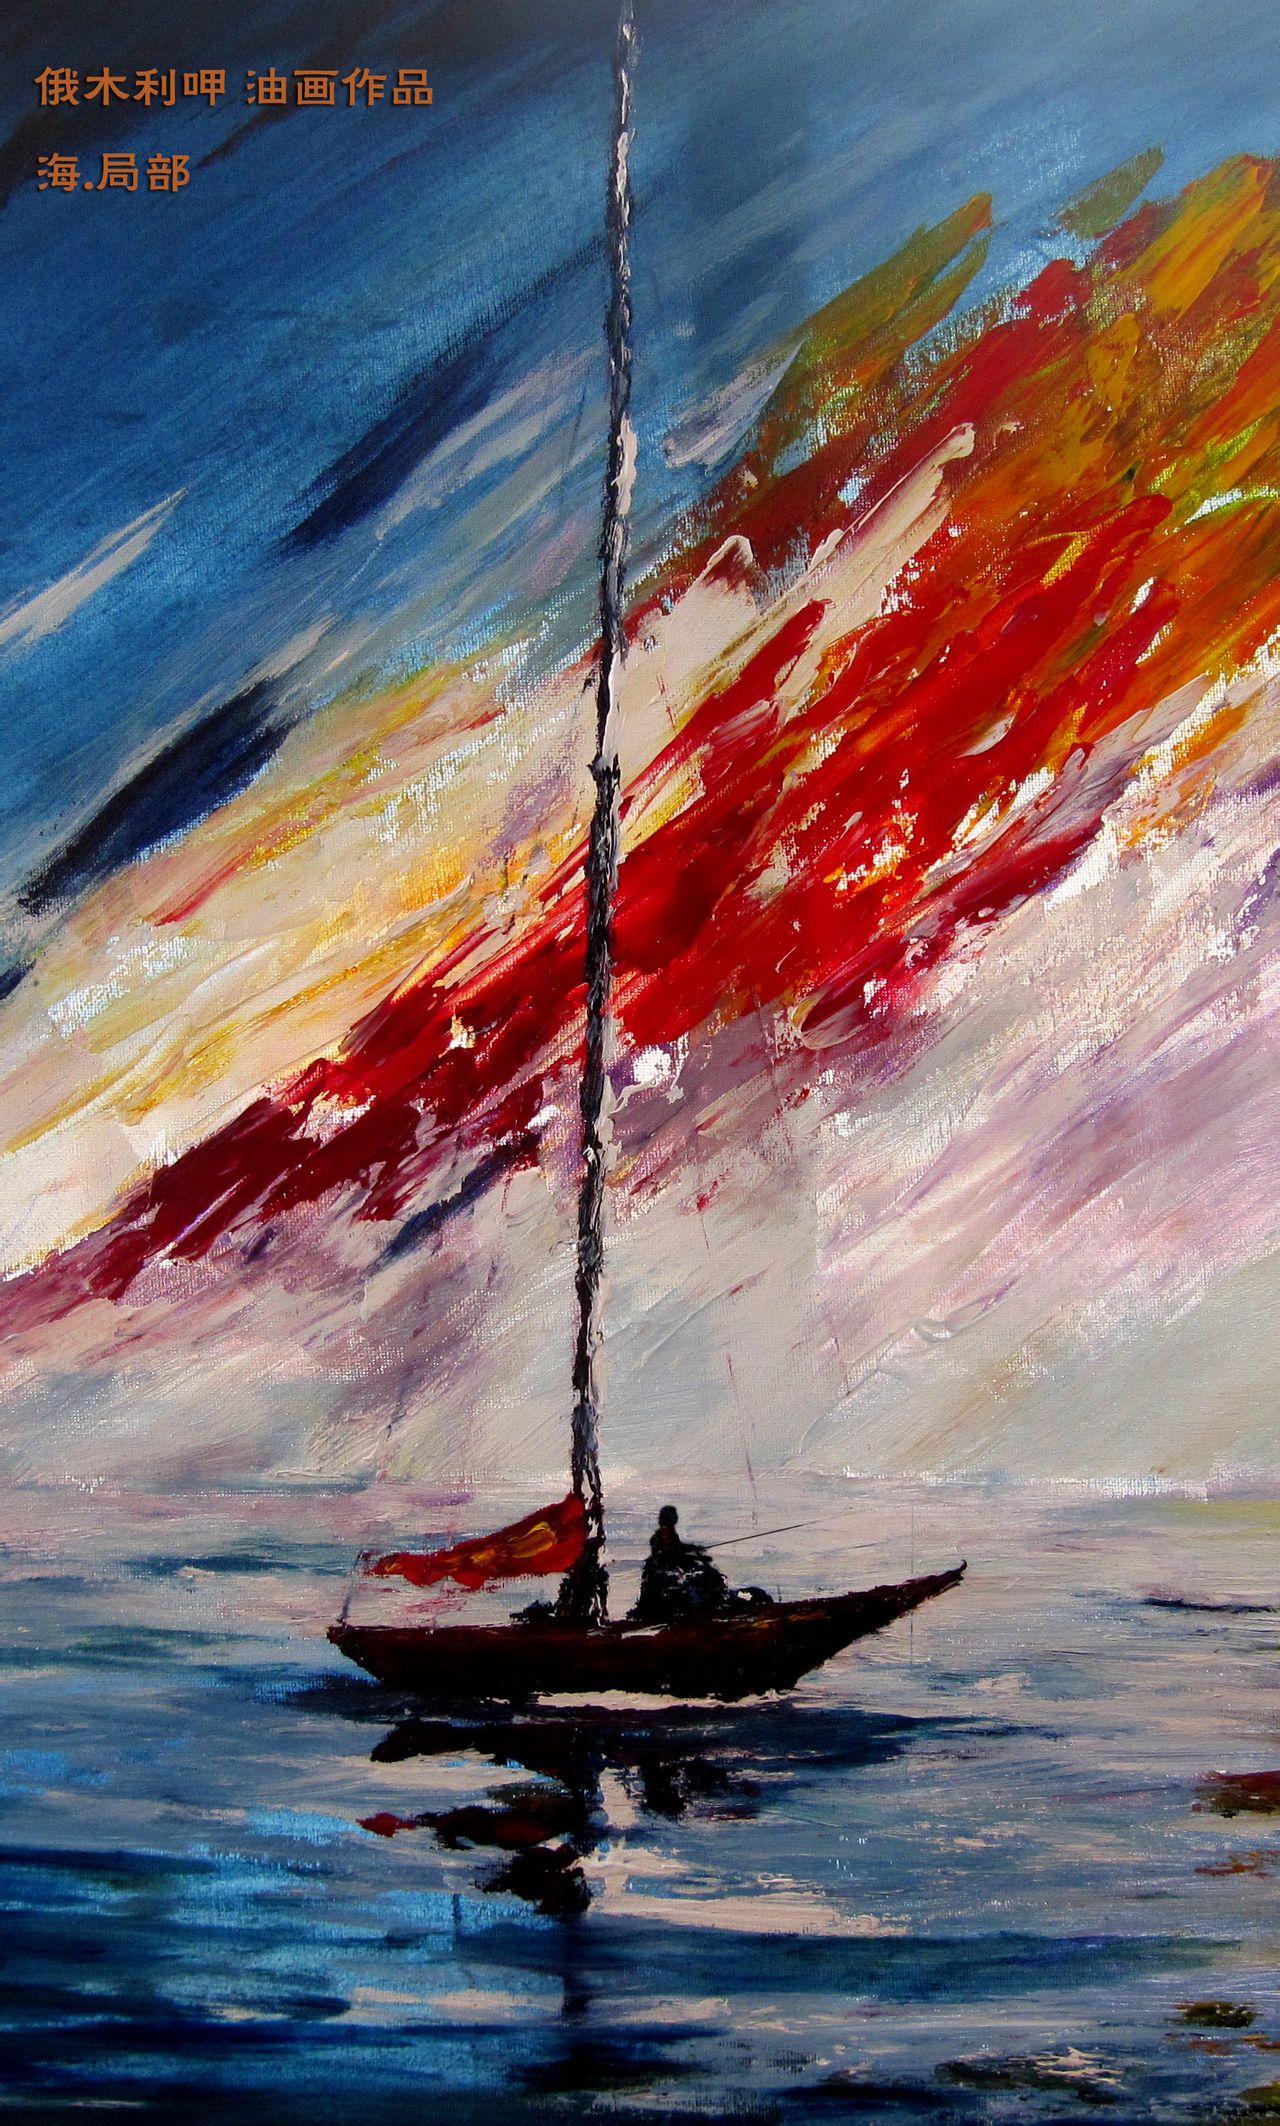 俄木利呷油畫《大海》局部